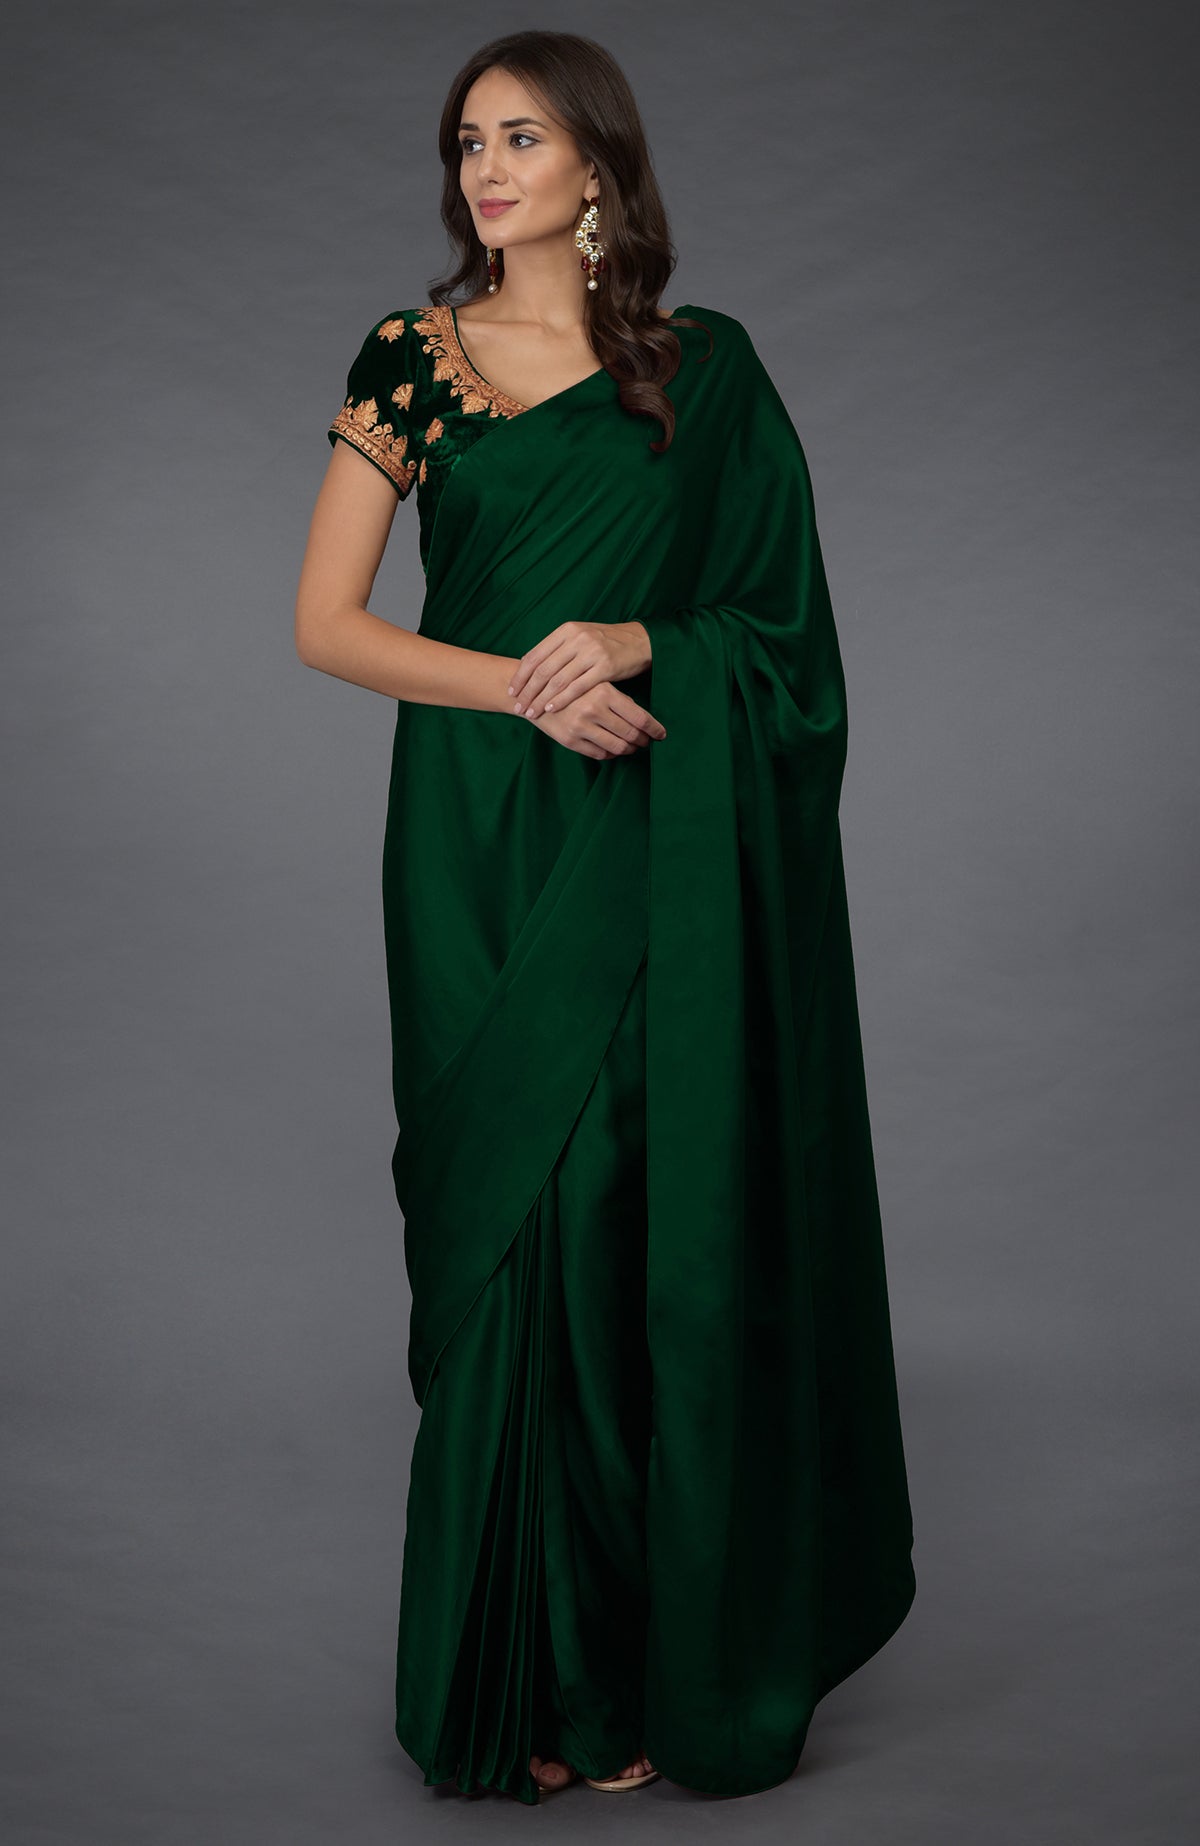 Green Saree : Buy Green Color Sari Online | Saree.com